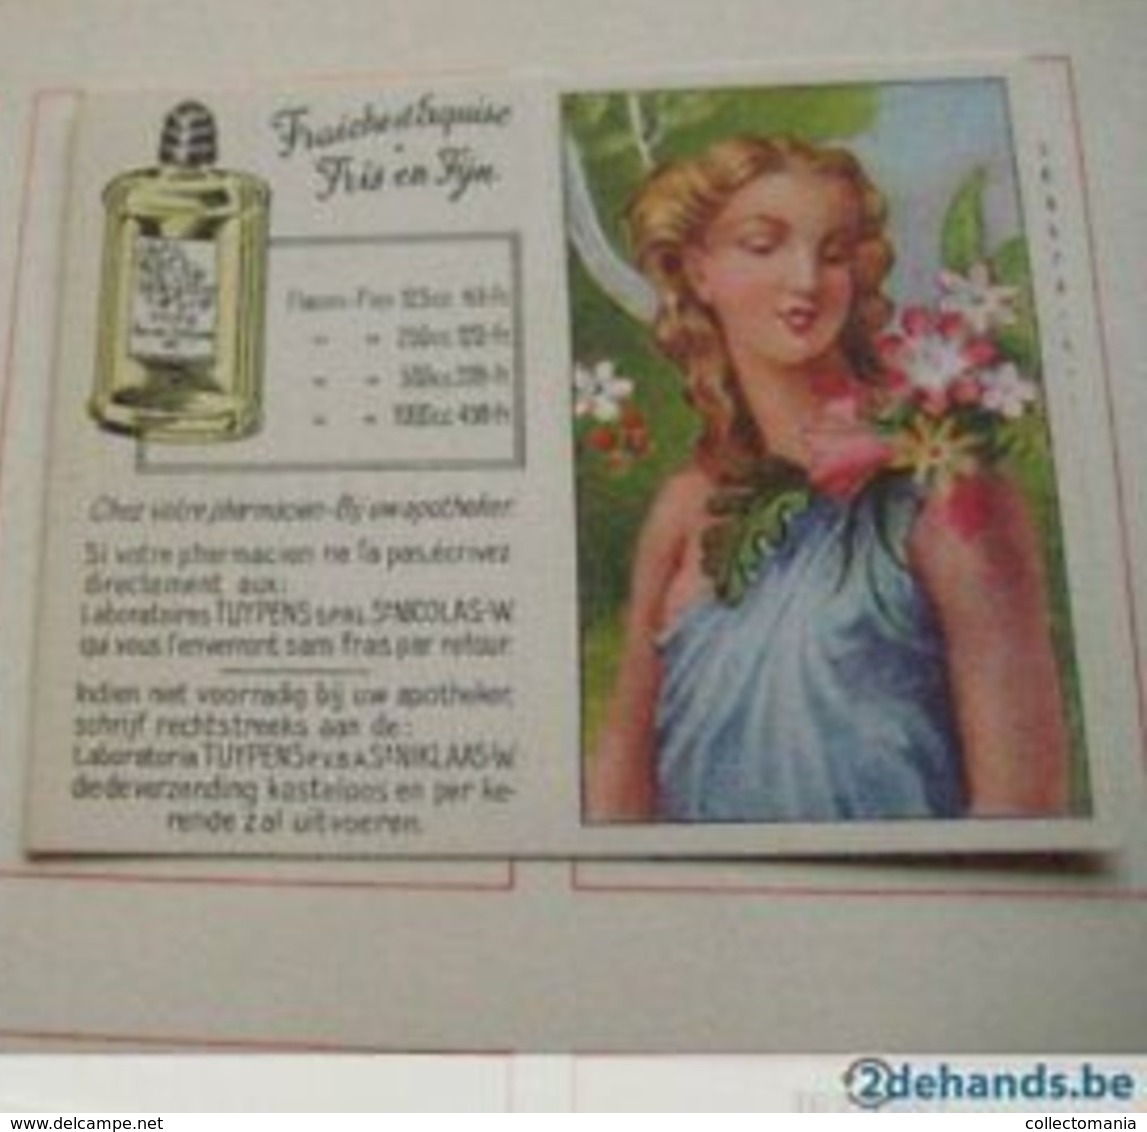 10 Cartes Differentes, + L'album Vide, Tous Comme Neuf , Femmes Célèbres De L'histoire Laboratoires TUYPENS Sint Niklaas - Antiquariat (bis 1960)